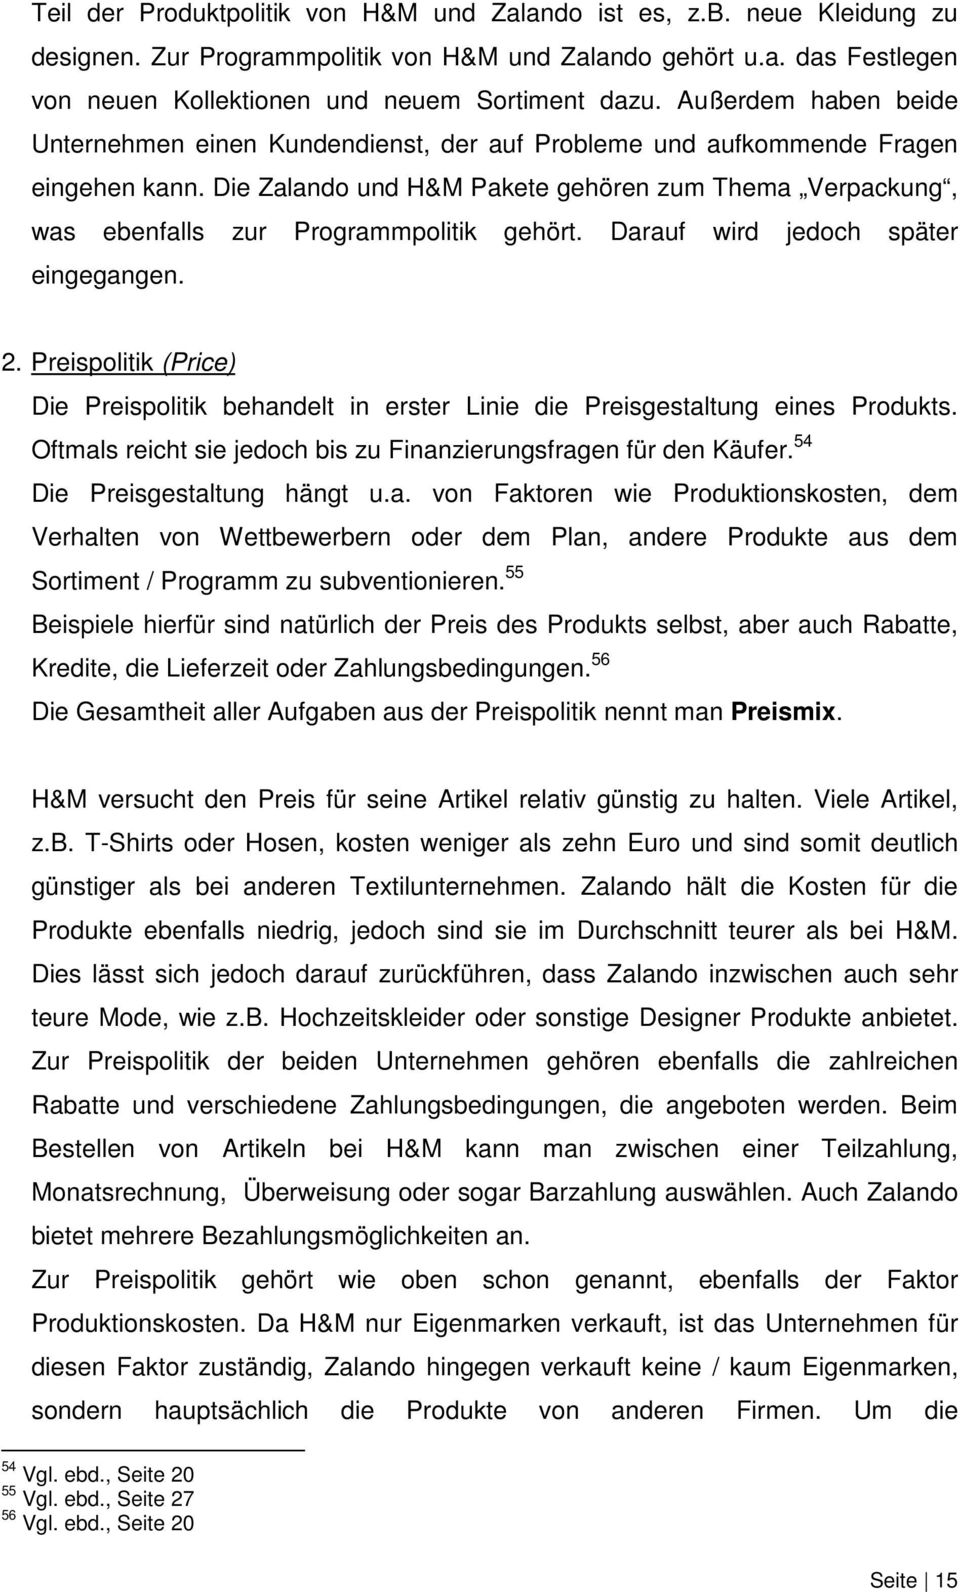 Die Zalando und H&M Pakete gehören zum Thema Verpackung, was ebenfalls zur Programmpolitik gehört. Darauf wird jedoch später eingegangen. 2.